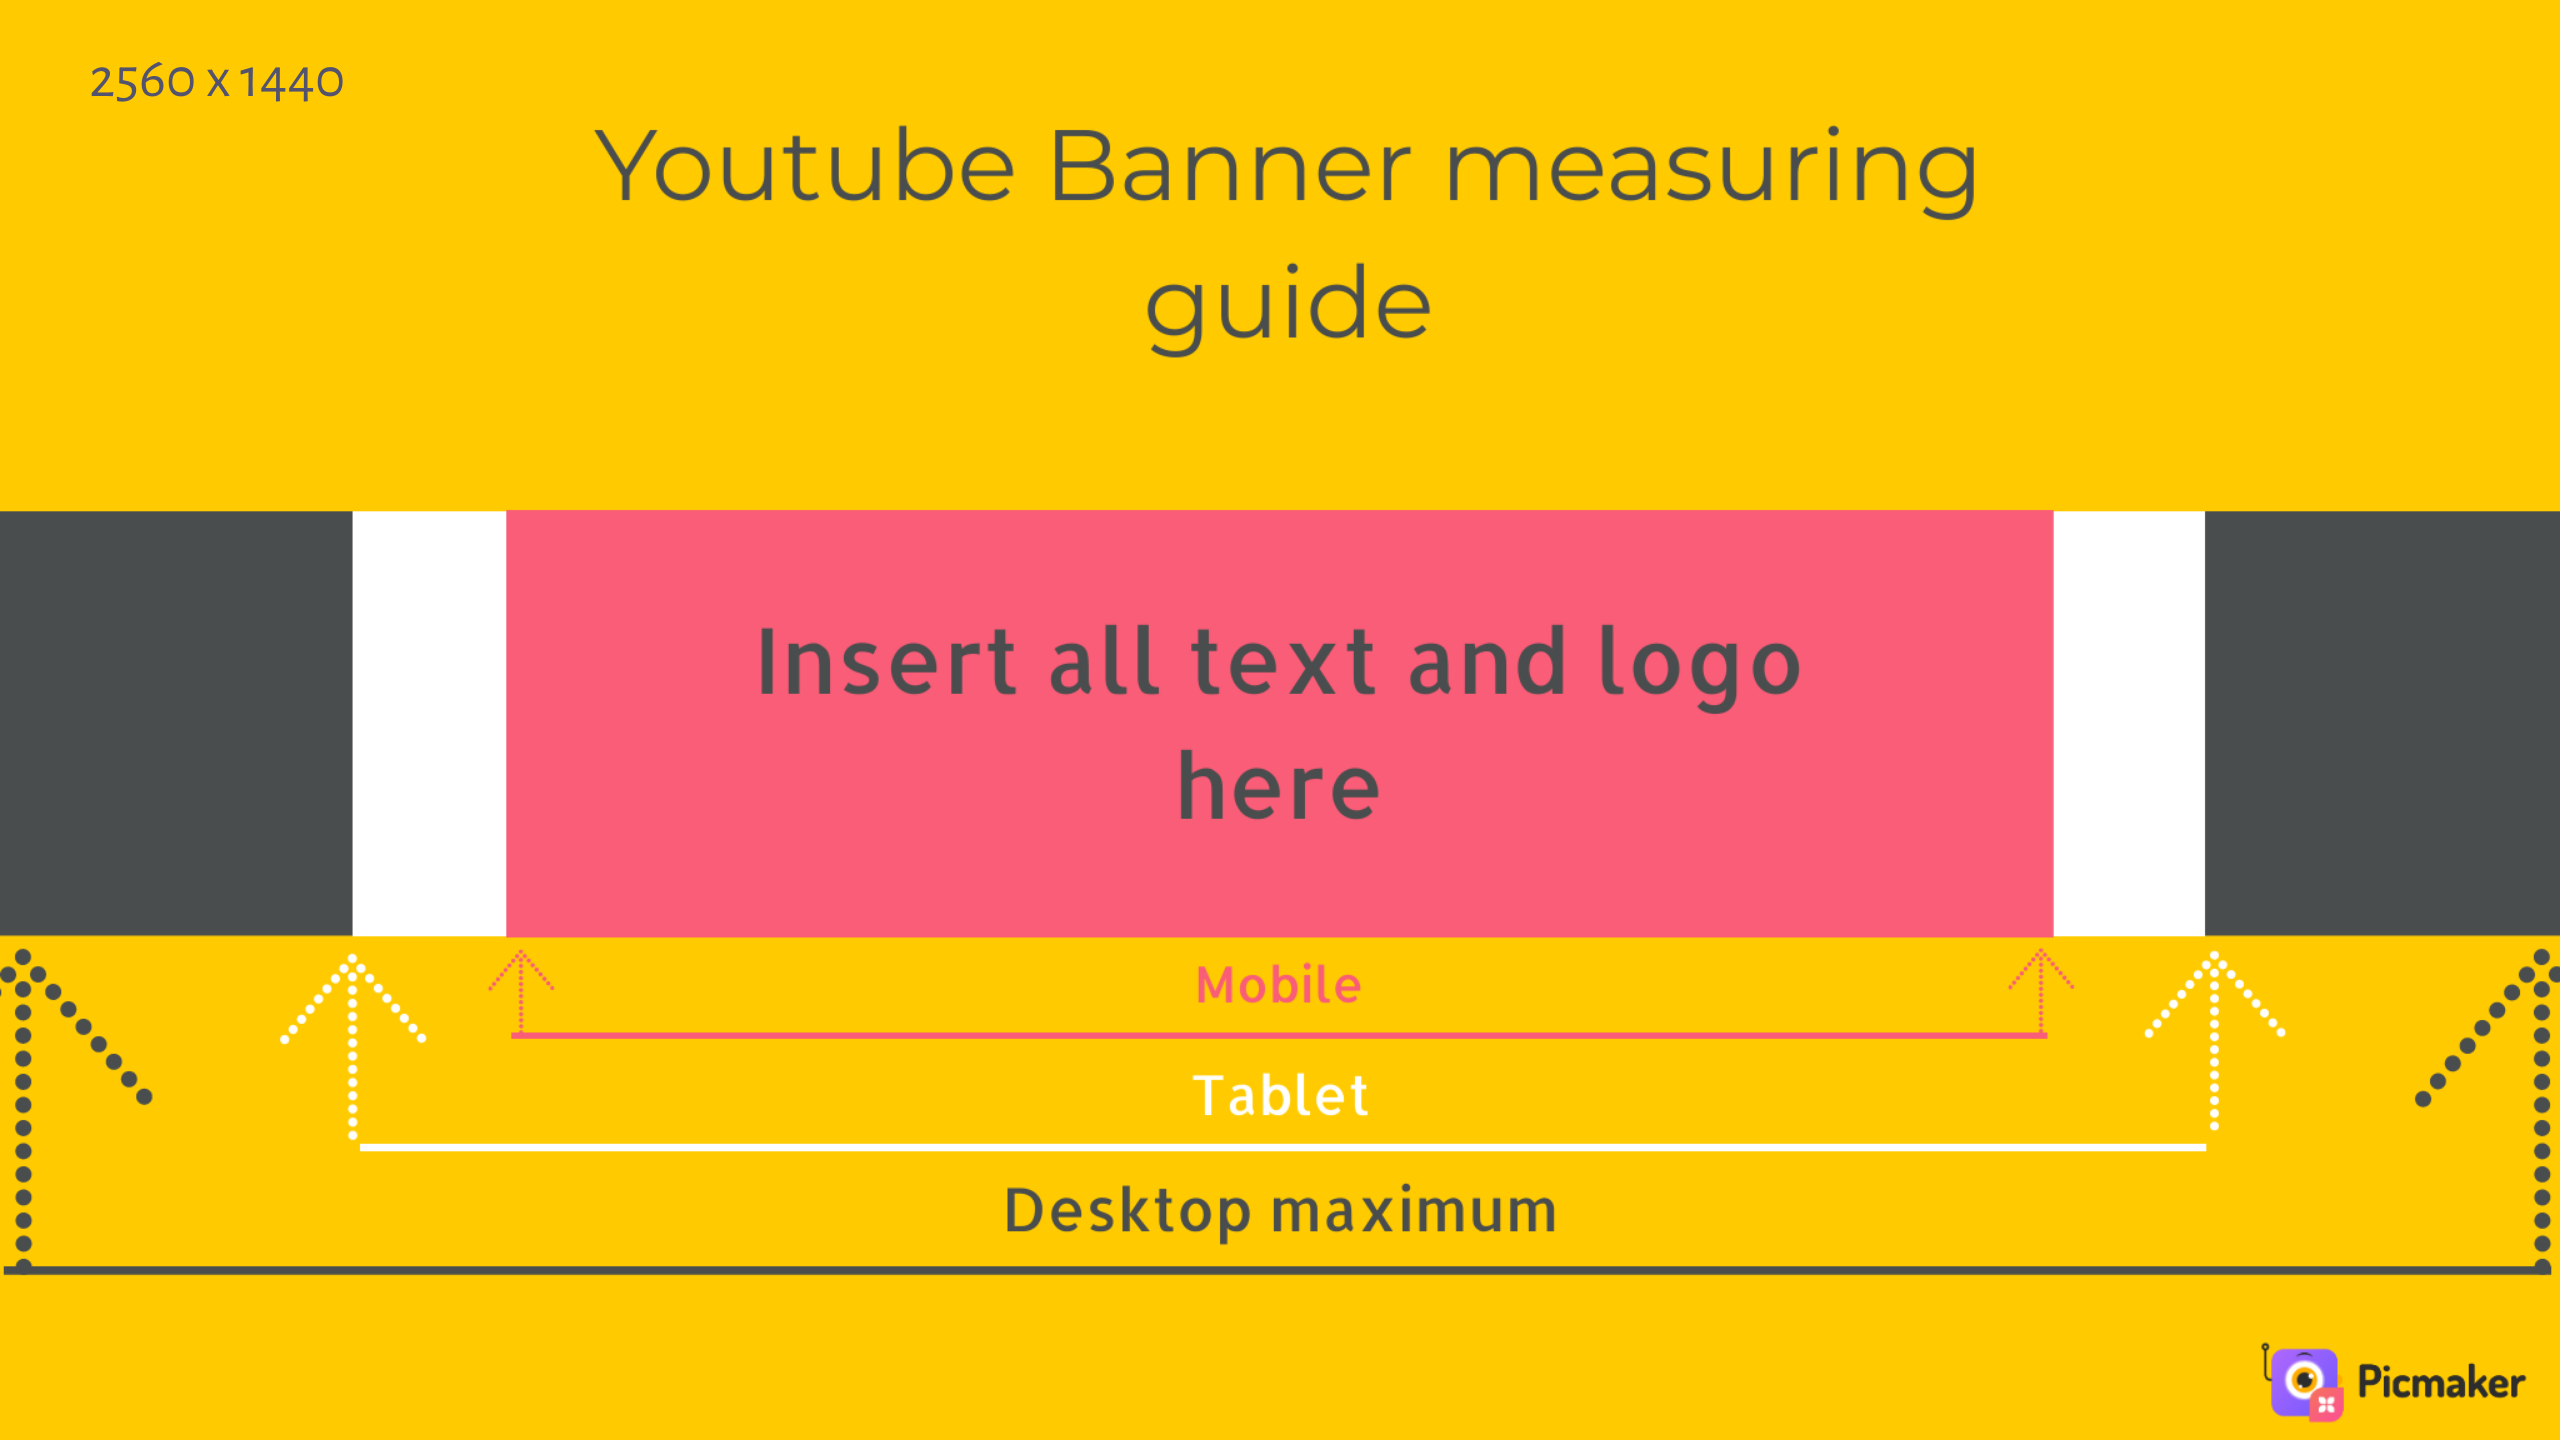 YouTube banner design: Một thiết kế banner đẹp và chuyên nghiệp có thể giúp kênh YouTube của bạn thu hút nhiều lượt theo dõi hơn bao giờ hết. Khám phá những ý tưởng thiết kế banner thú vị trên trang web của chúng tôi để tạo nên một kênh YouTube ấn tượng.